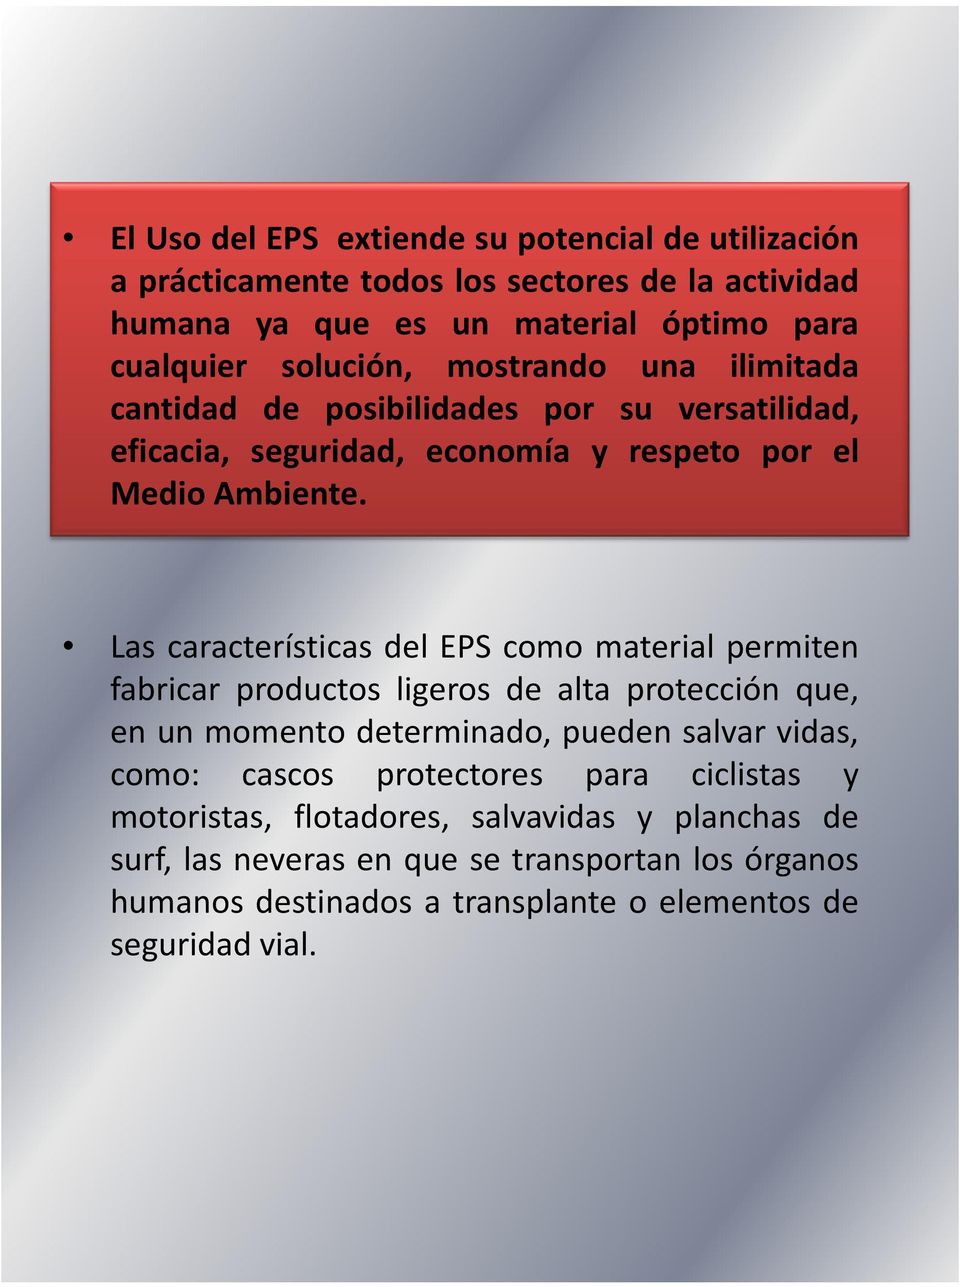 Las características del EPS como material permiten Las características del EPS como material permiten fabricar productos ligeros de alta protección que, en un momento